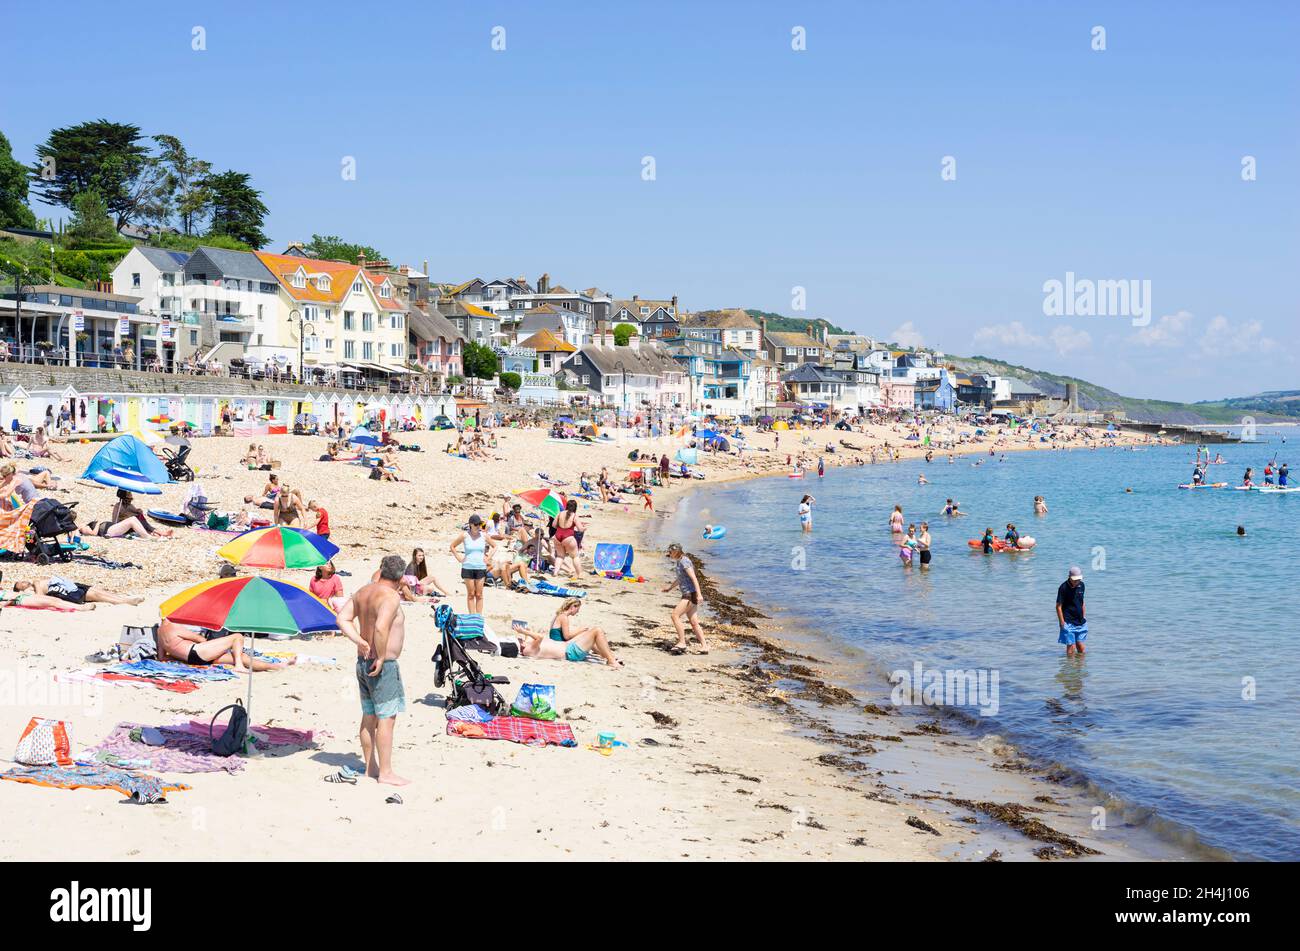 Famiglie sulla spiaggia con pop up tende sdraio ombrelloni e paddle board sulla spiaggia di sabbia a Lyme Regis Dorset Inghilterra GB Europa Foto Stock